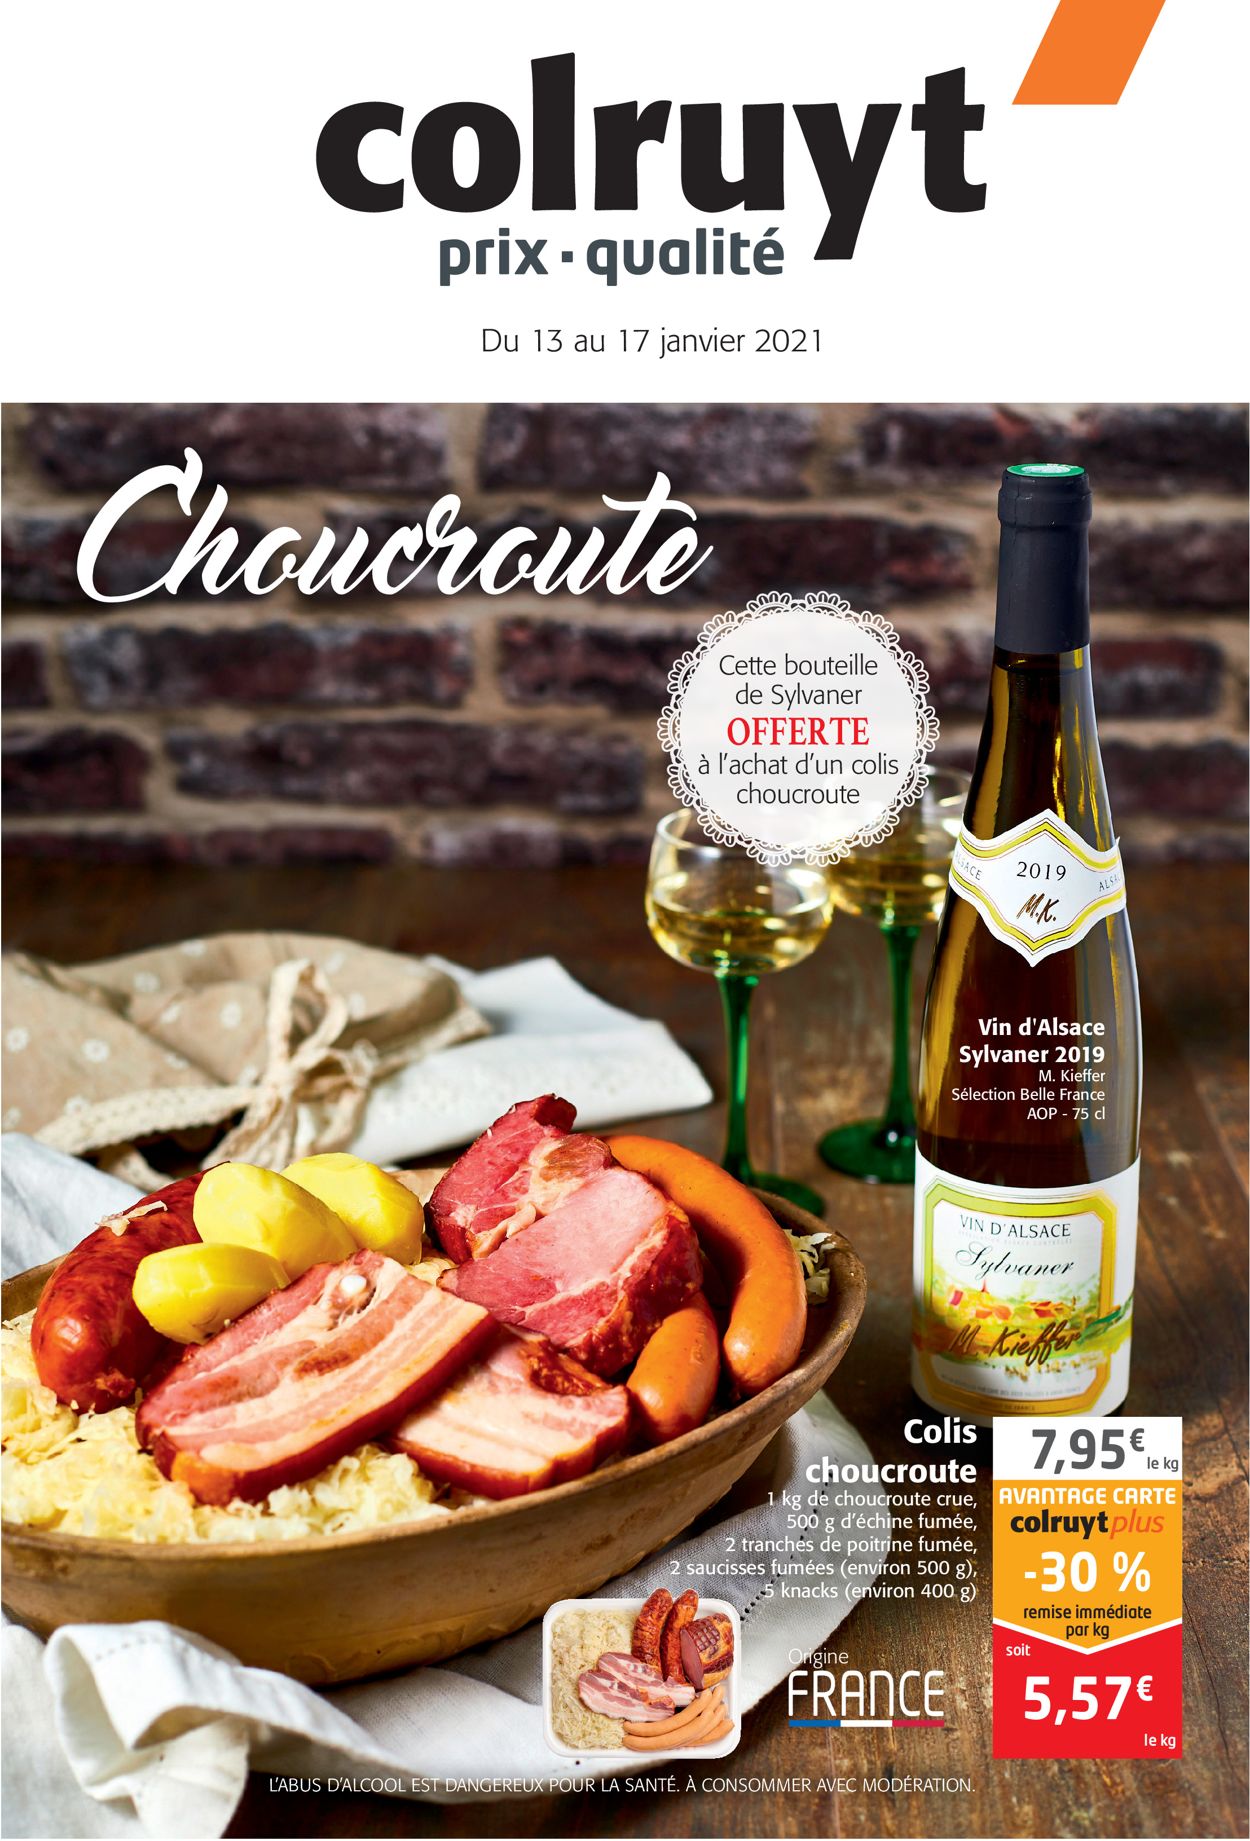 Colruyt Choucroute 2021 Catalogue - 13.01-17.01.2021